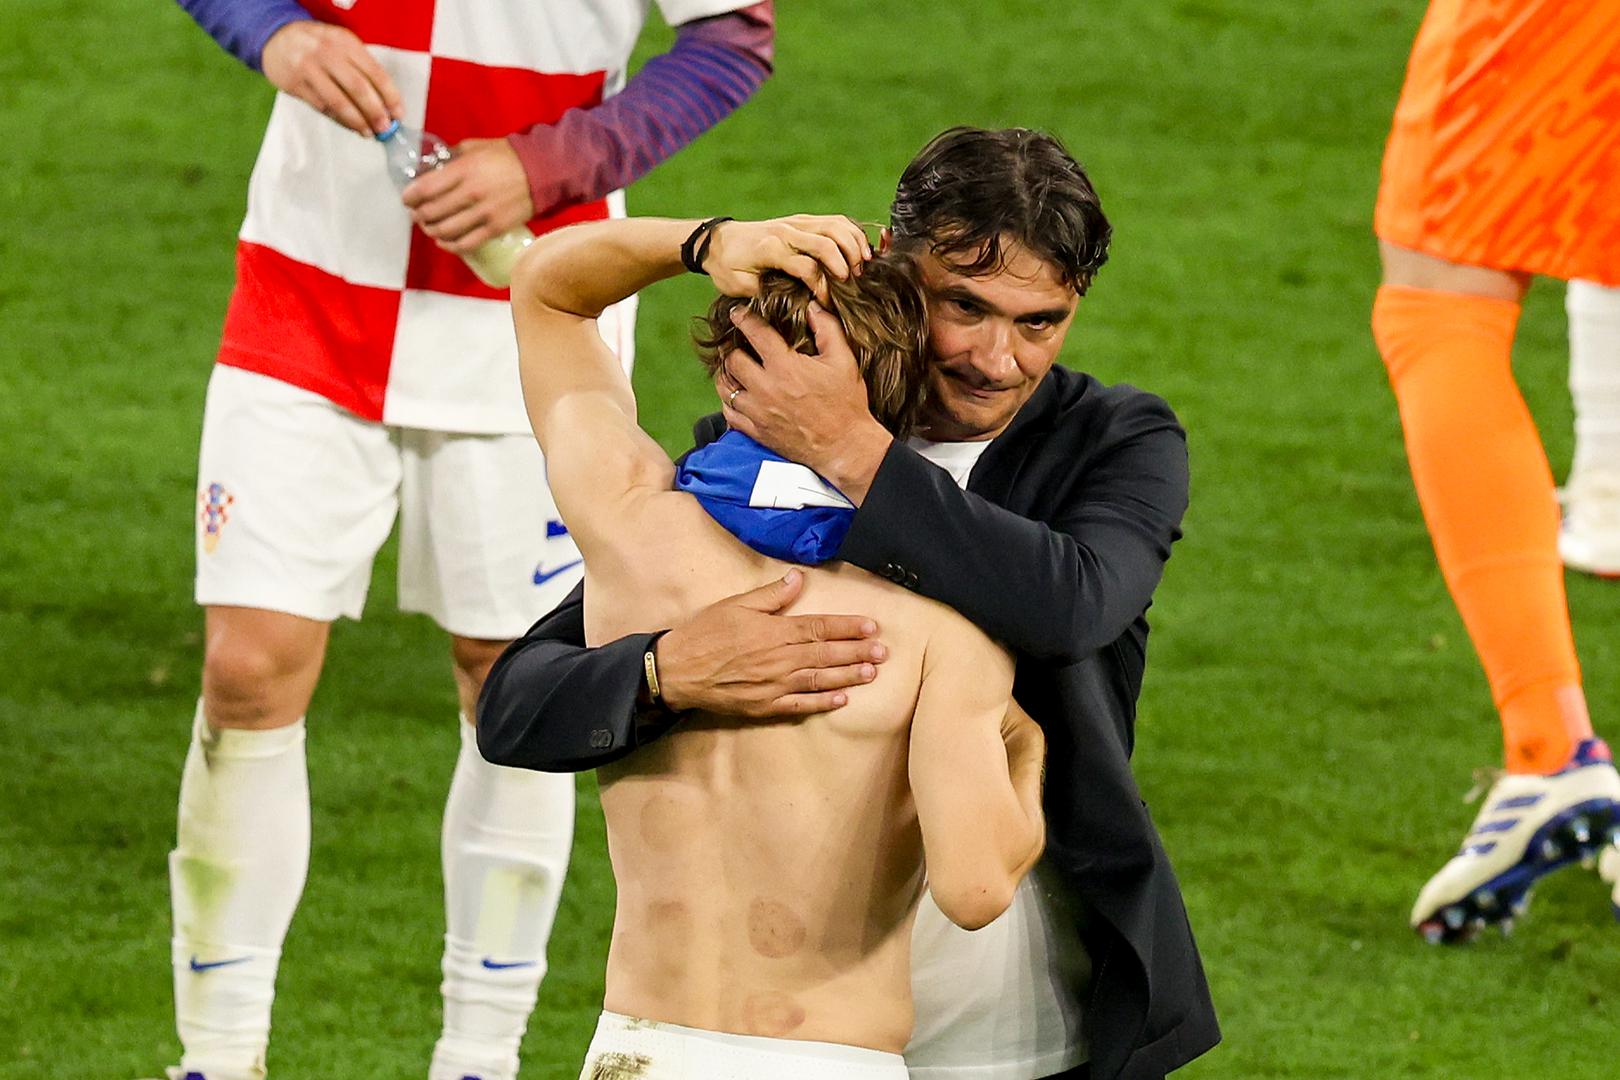  Izbornik Zlatko Dalić i kapetan Luka Modrić pružili su si zagrljaj, pokazujući zajedništvo i pokušavajući utješiti jedan drugoga 